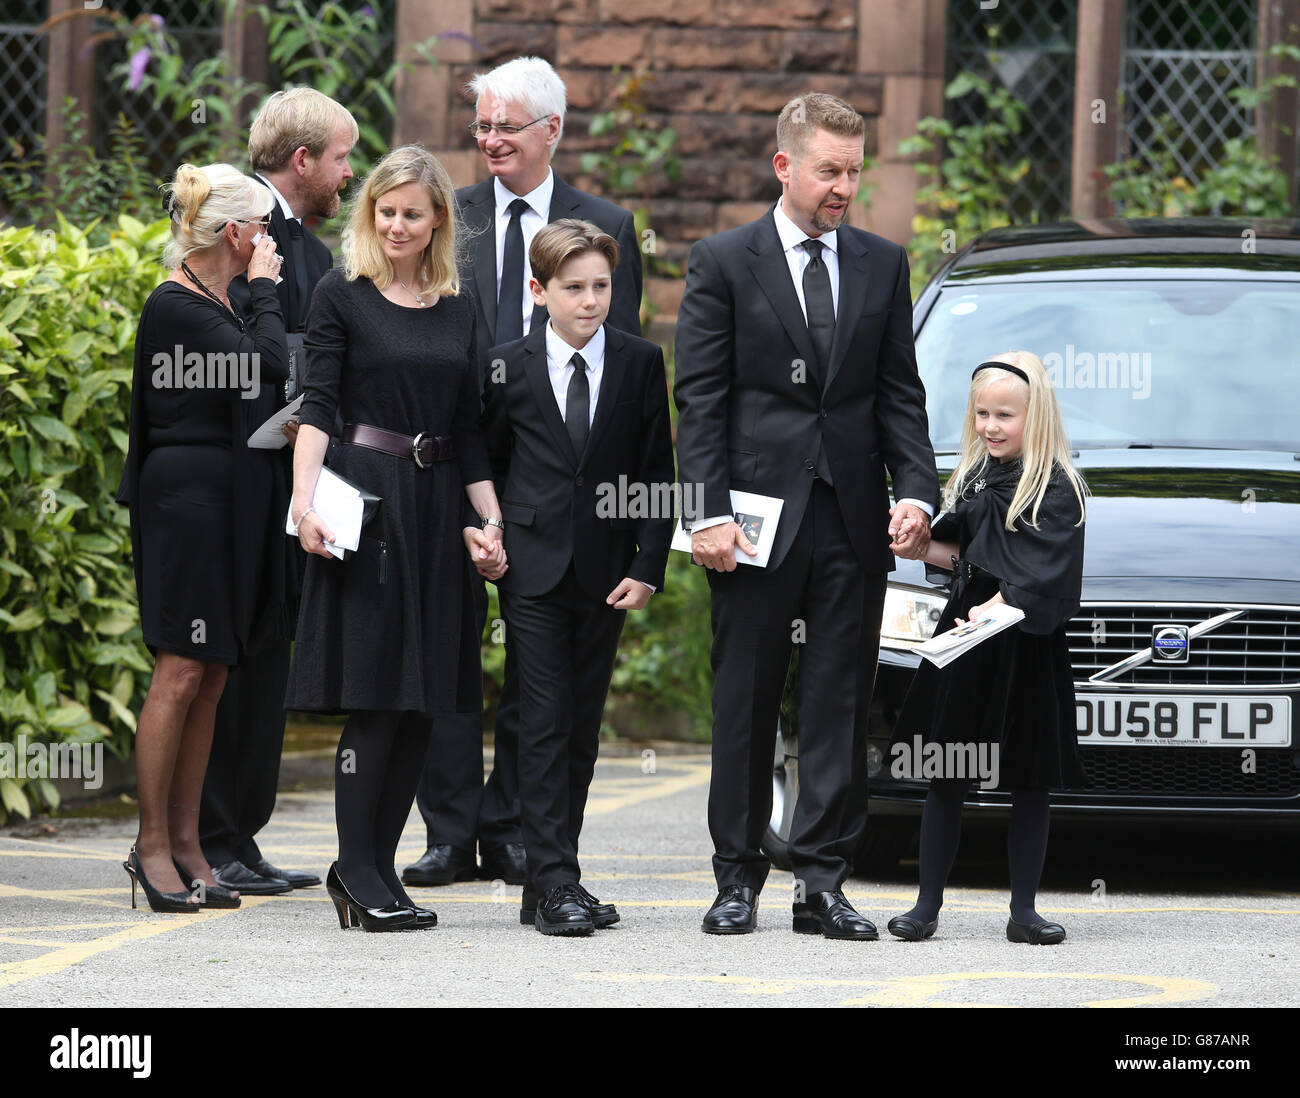 Ben et Robert, fils de Cilla Black, avec leurs familles, quittent l'église St Mary's à Woolton, Liverpool, après les funérailles de Cilla Black . Banque D'Images